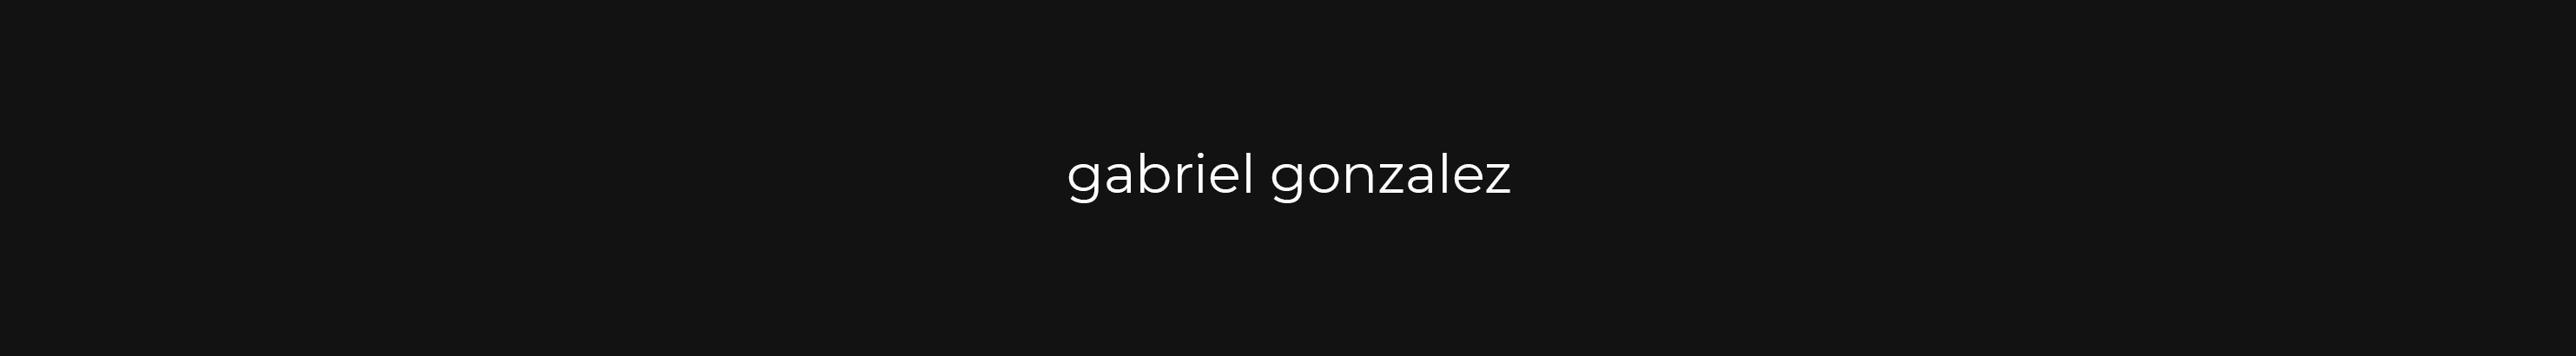 Gabriel Gonzalez's profile banner